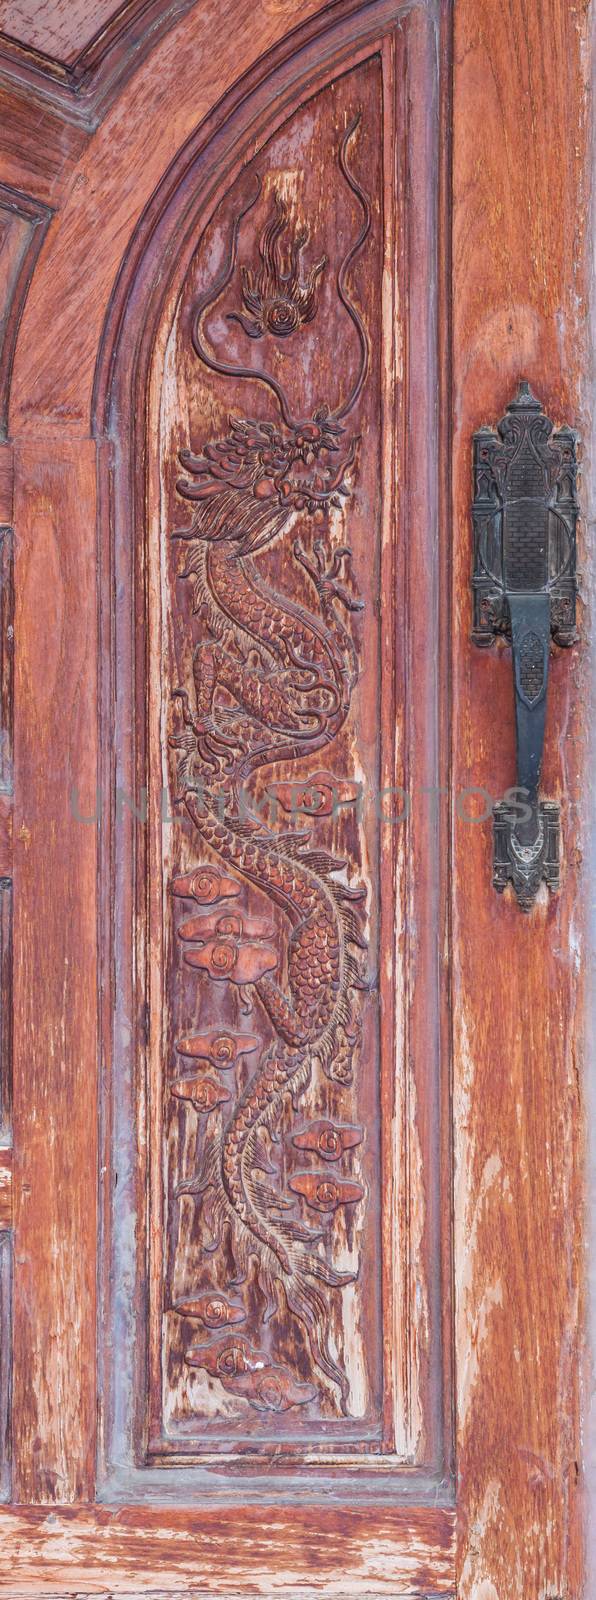 old vintage classic wood furniture door handle